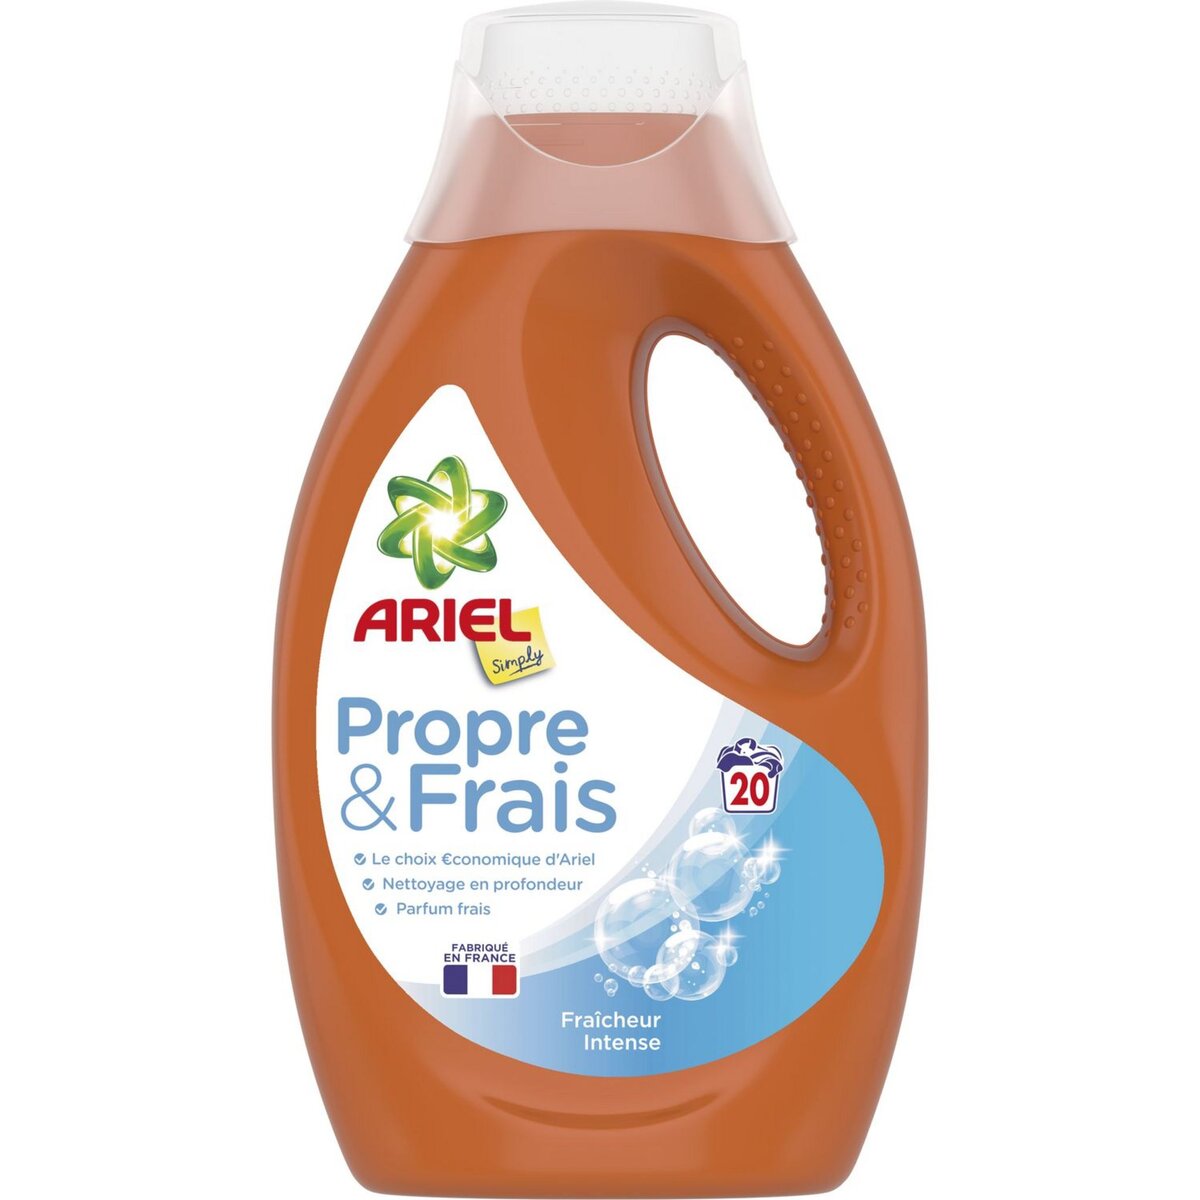 ARIEL Ariel Propre & Frais lessive liquide fraîcheur intense 20 lavages 1,1l 20 lavages 1,1l